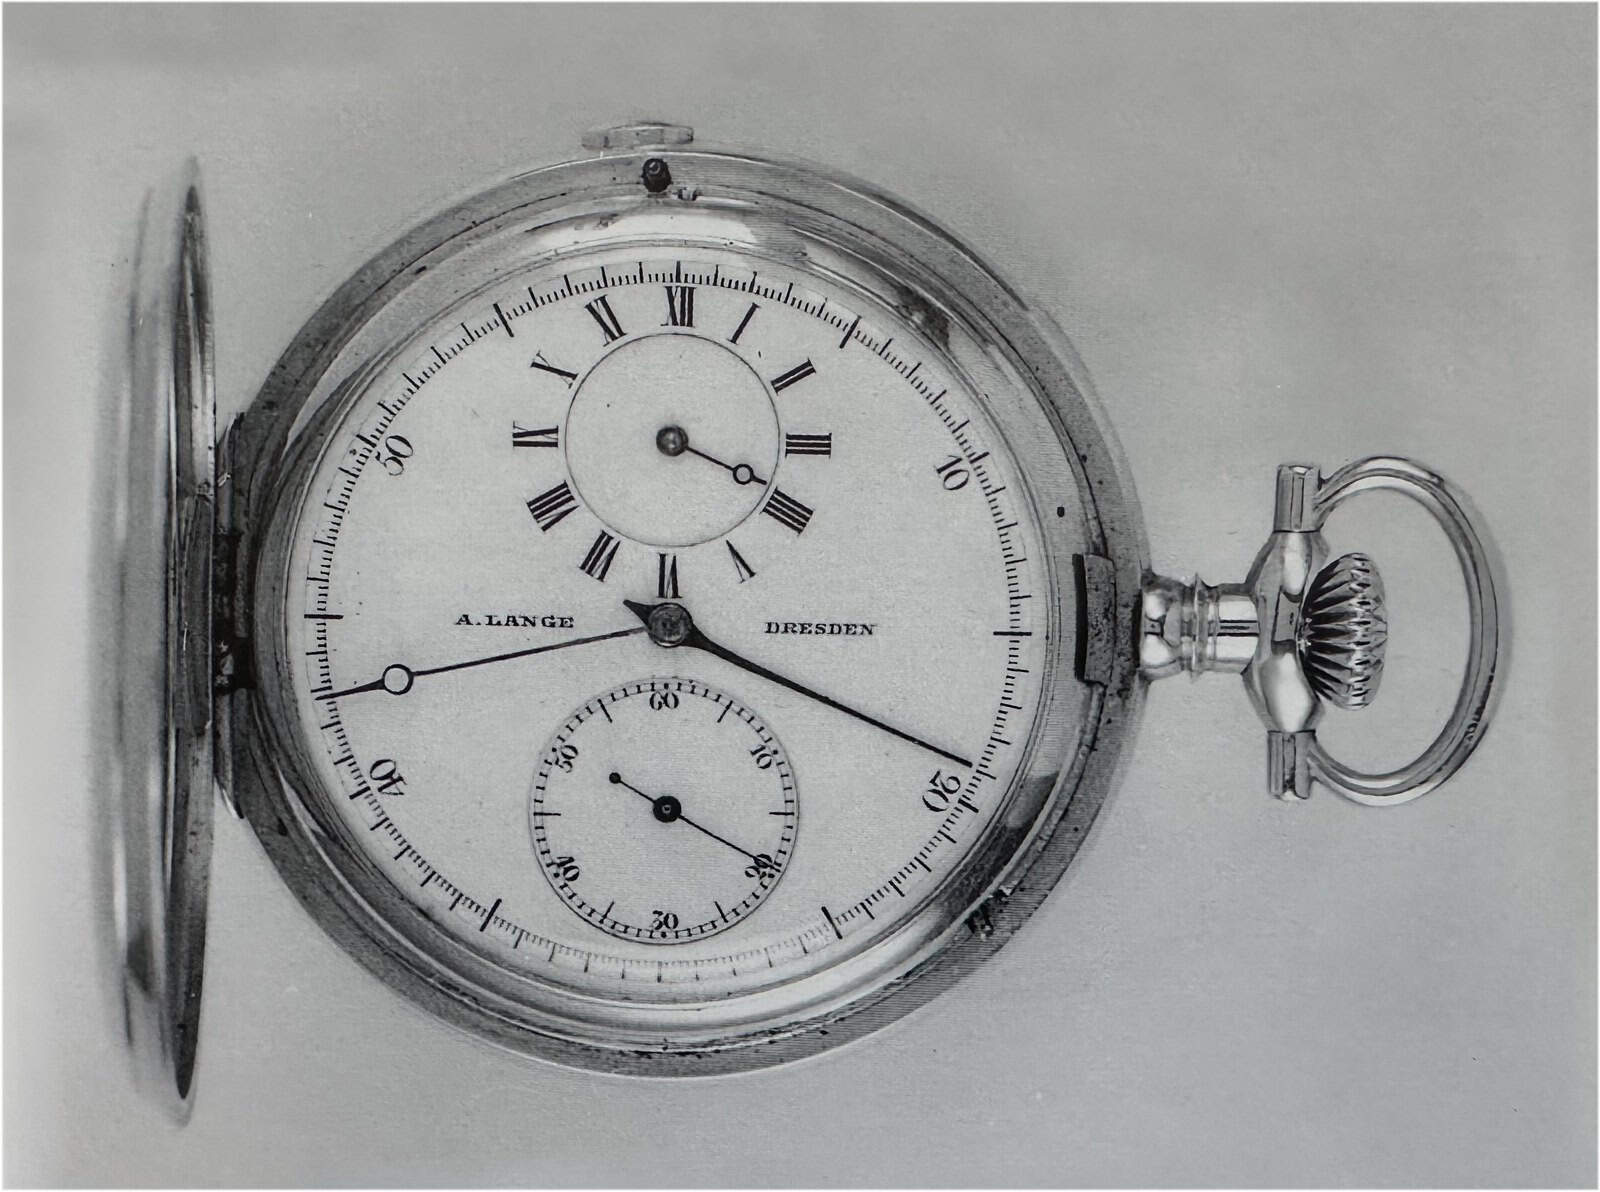 A. Lange Dresden Chronograph 1870 (Auktionen Dr. Crott)